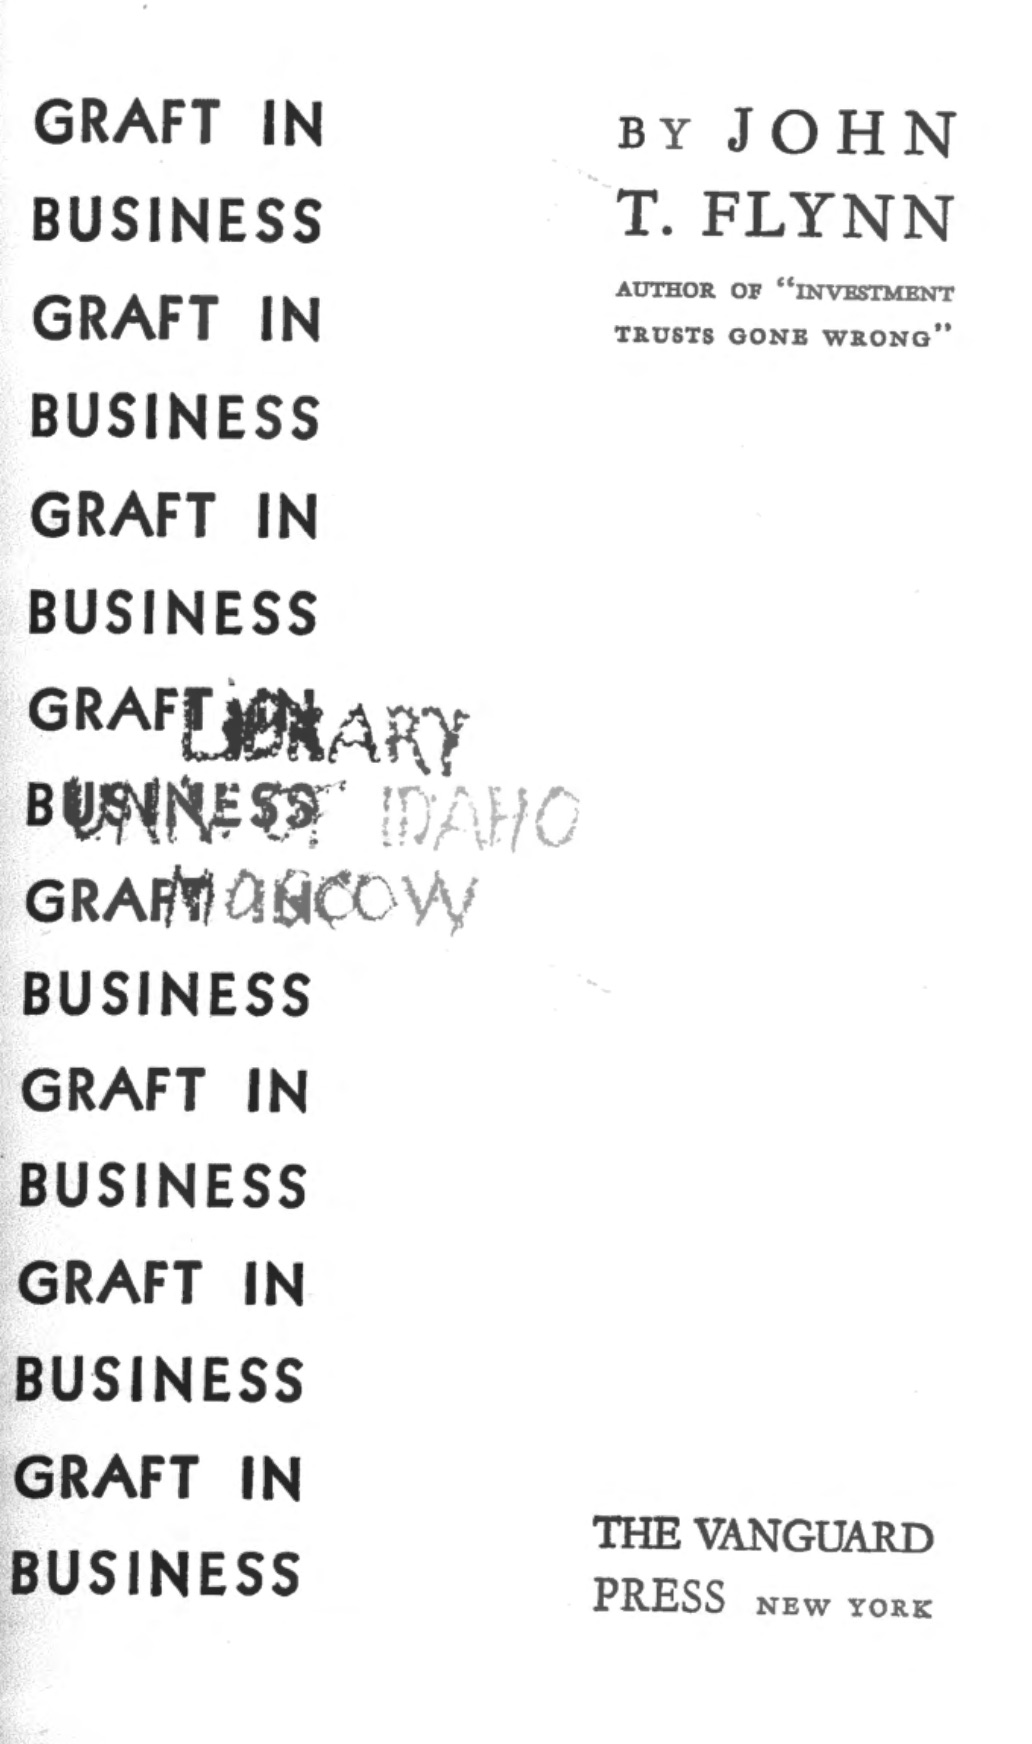 Graft in Business (1931) by John T. Flynn